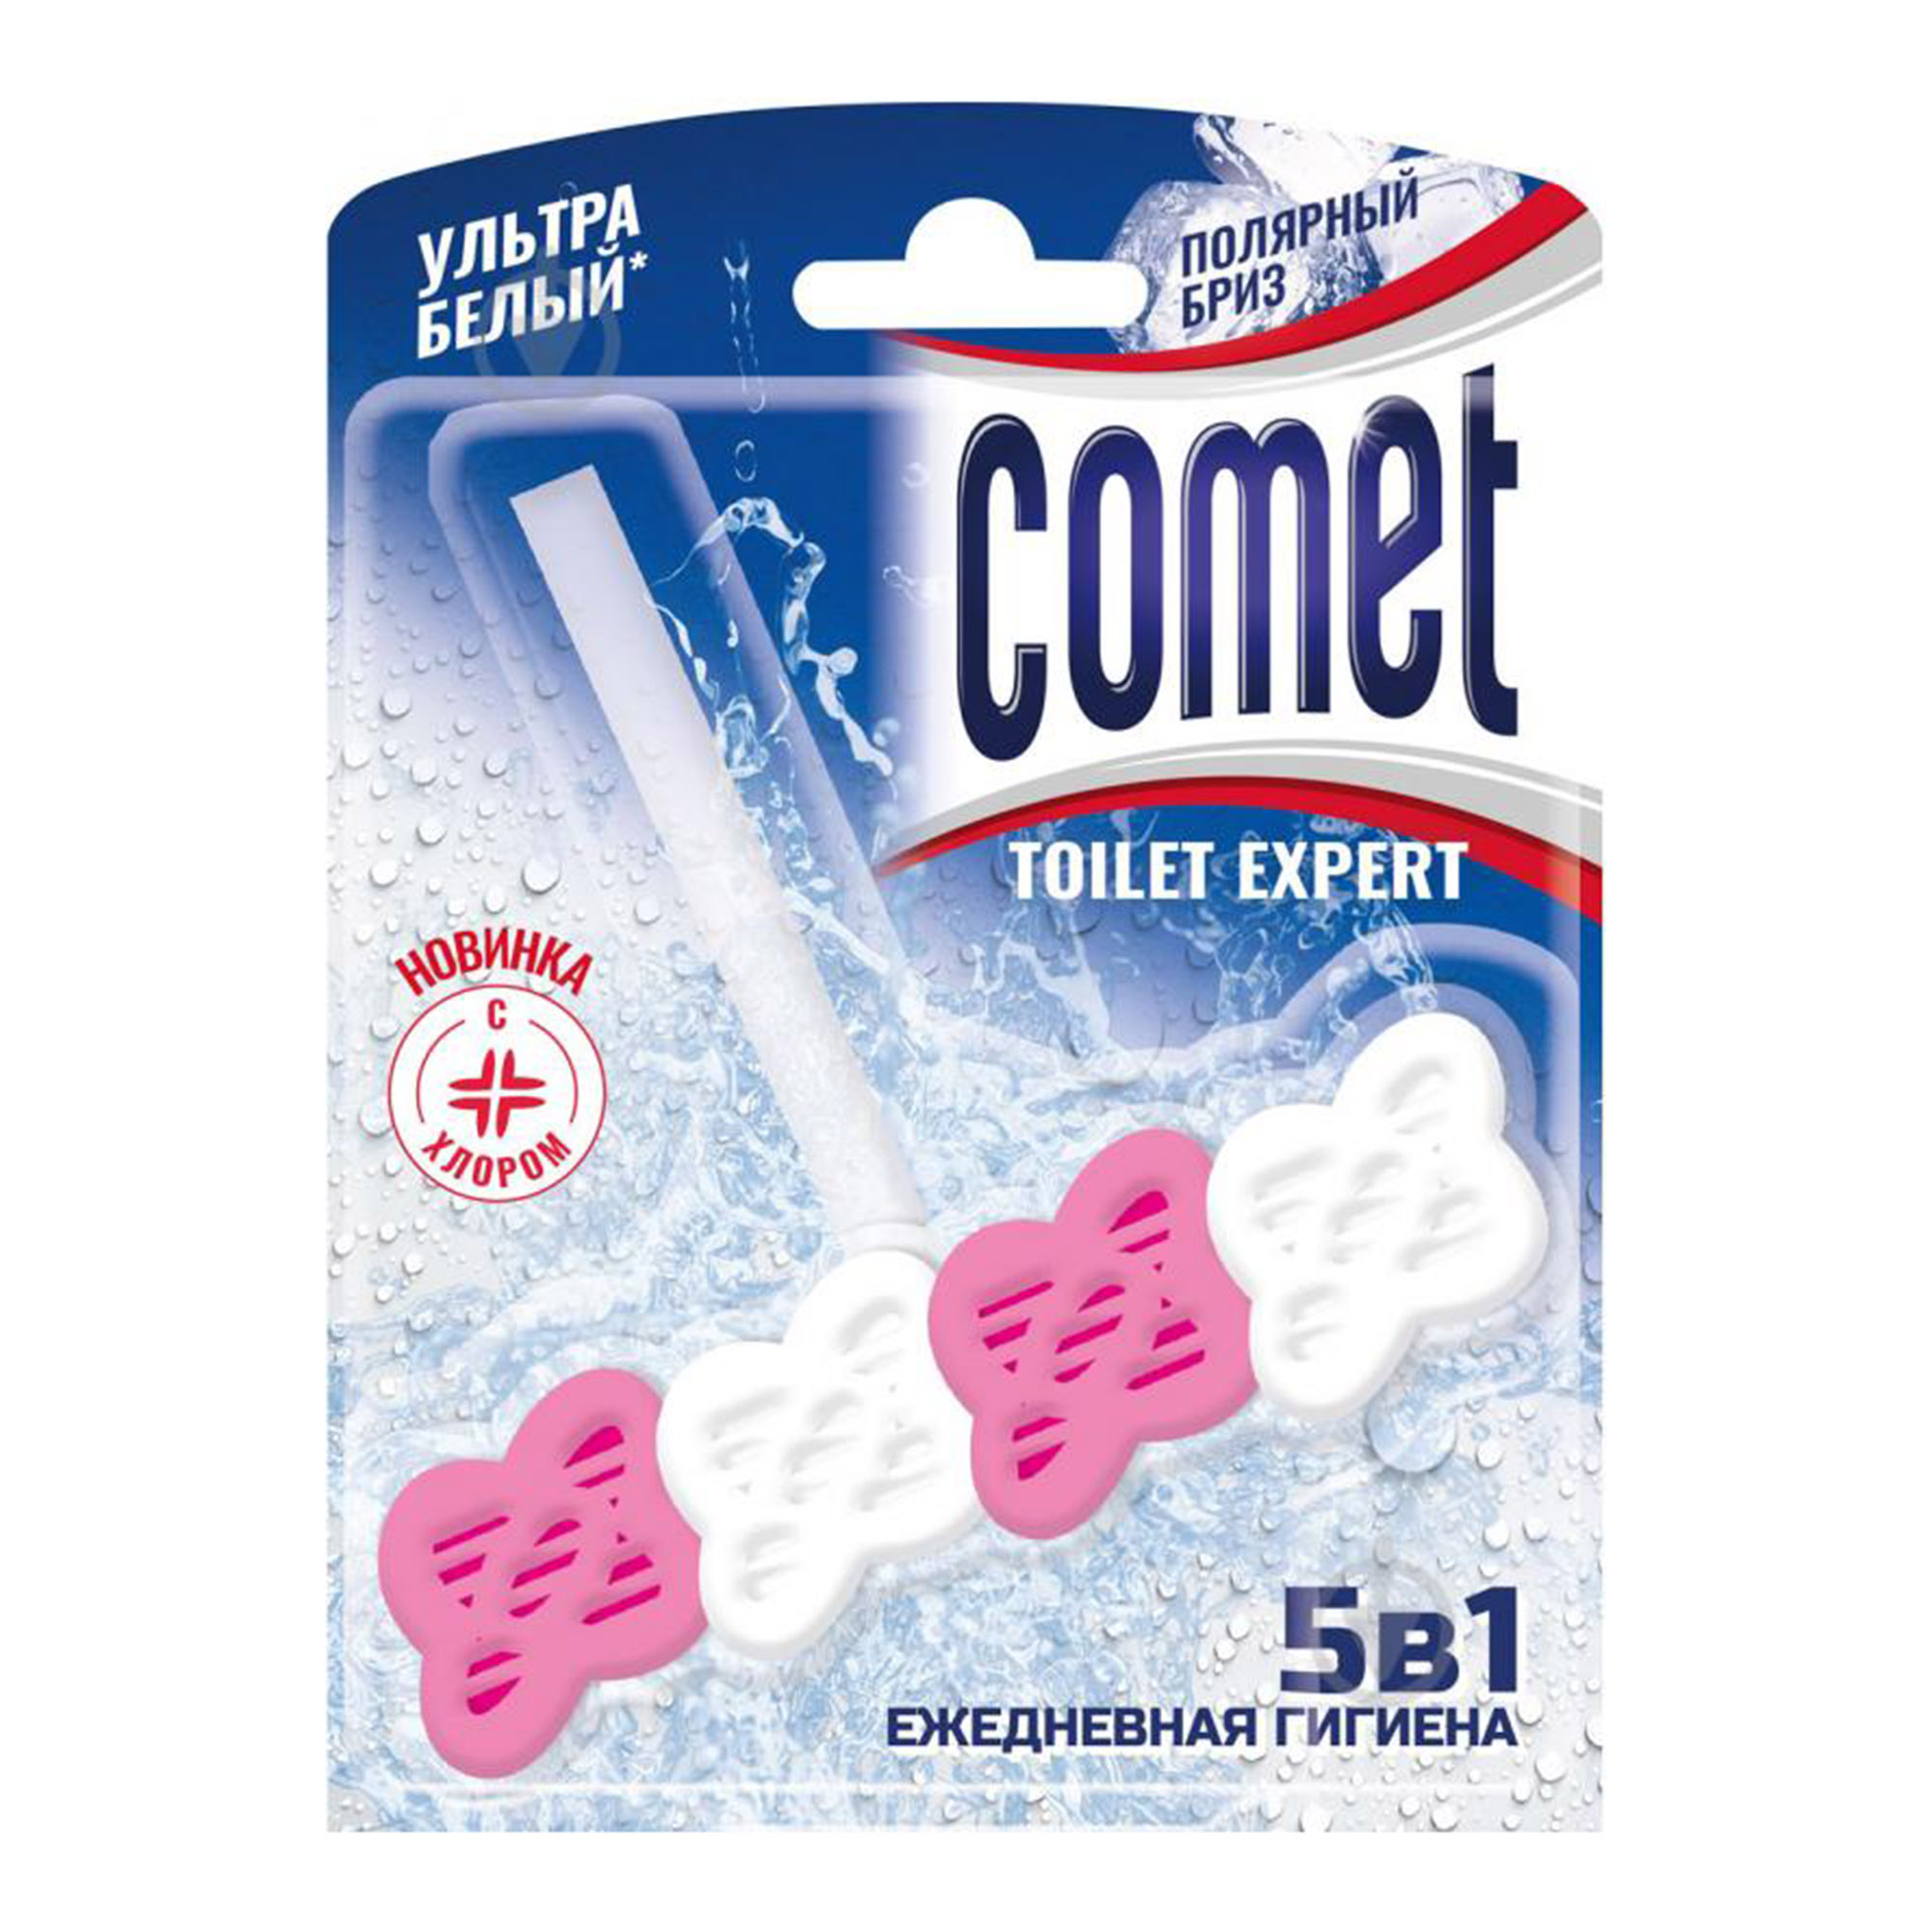 comet 16 Туалетный блок Comet Полярный бриз 48 г